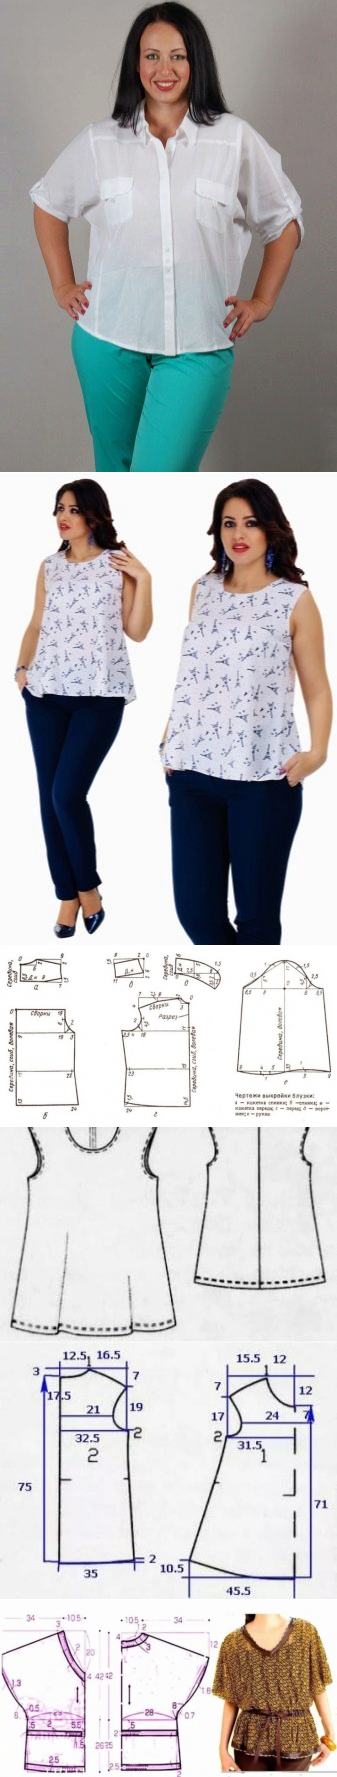 Выкройка блузки для полных женщин (49 фото): летние блузоны-туники большого размера своими руками